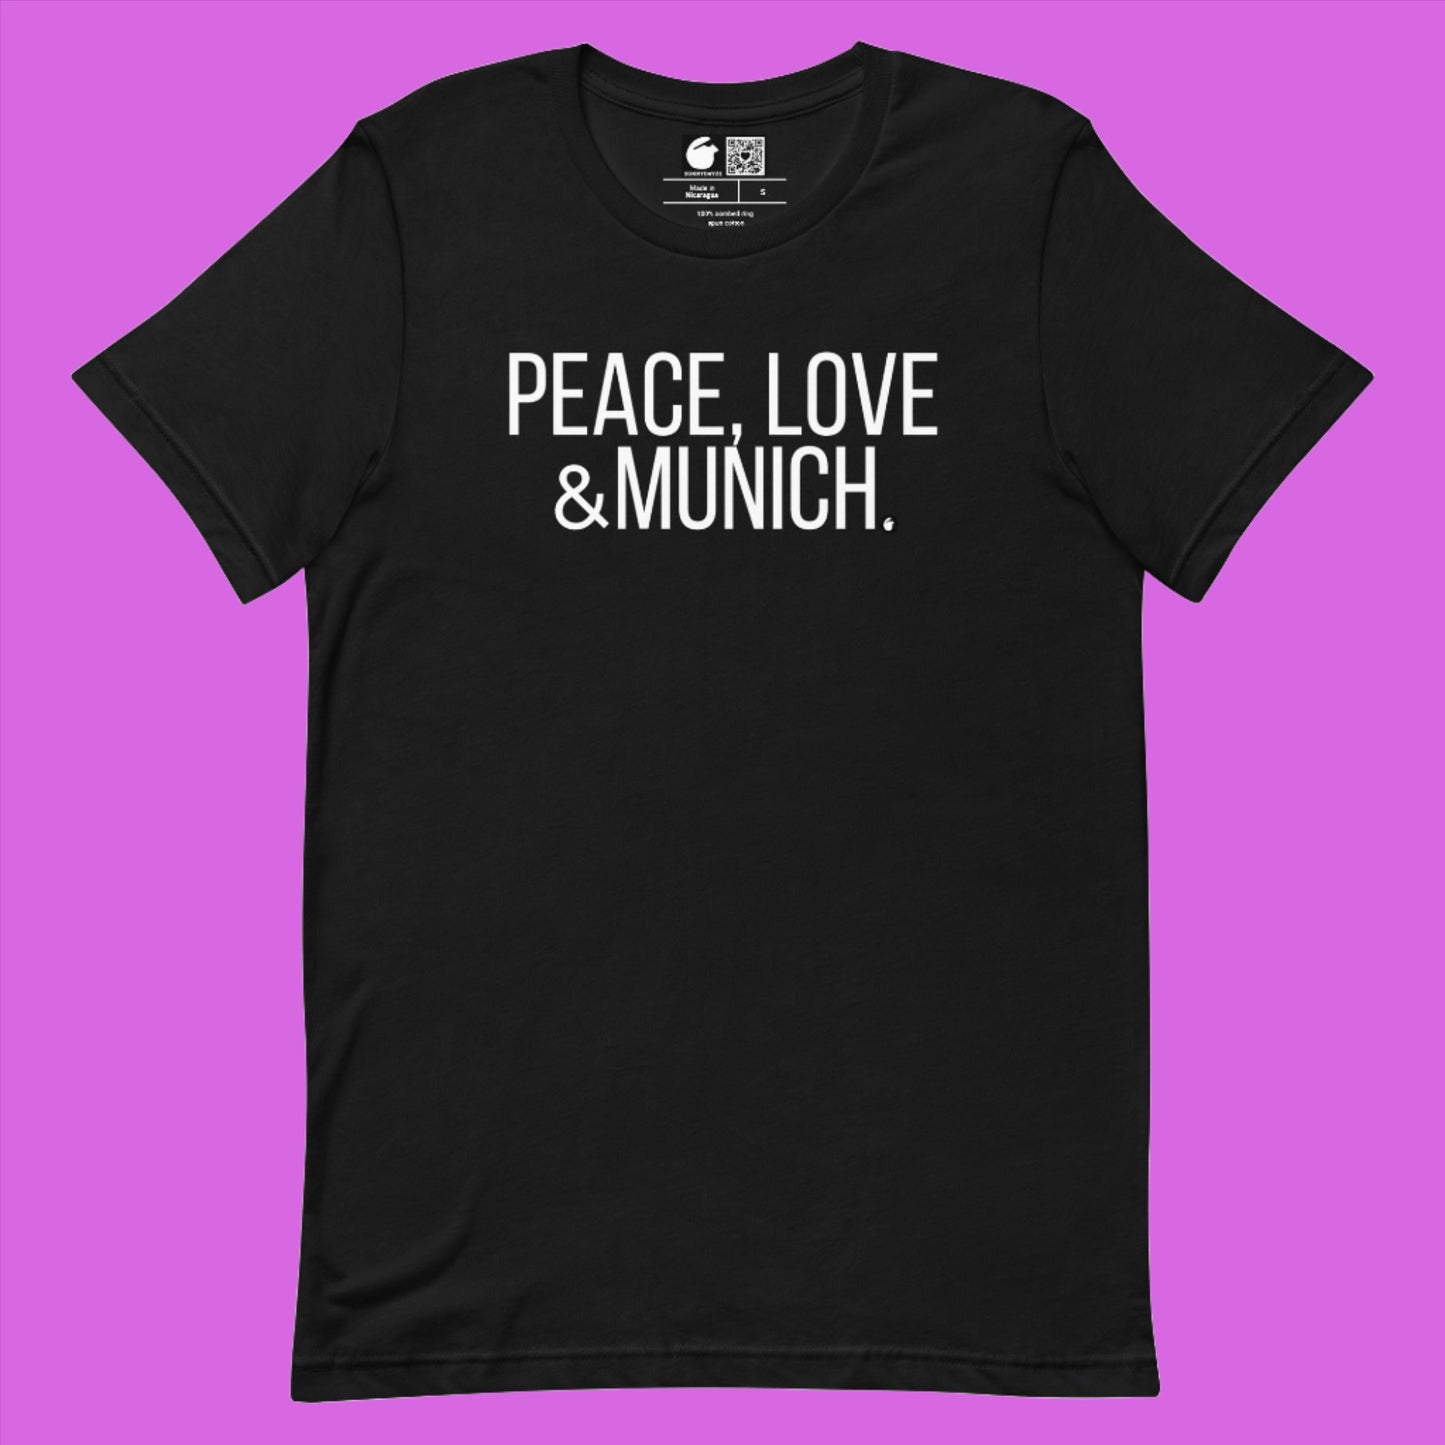 MUNICH Short-Sleeve Unisex t-shirt